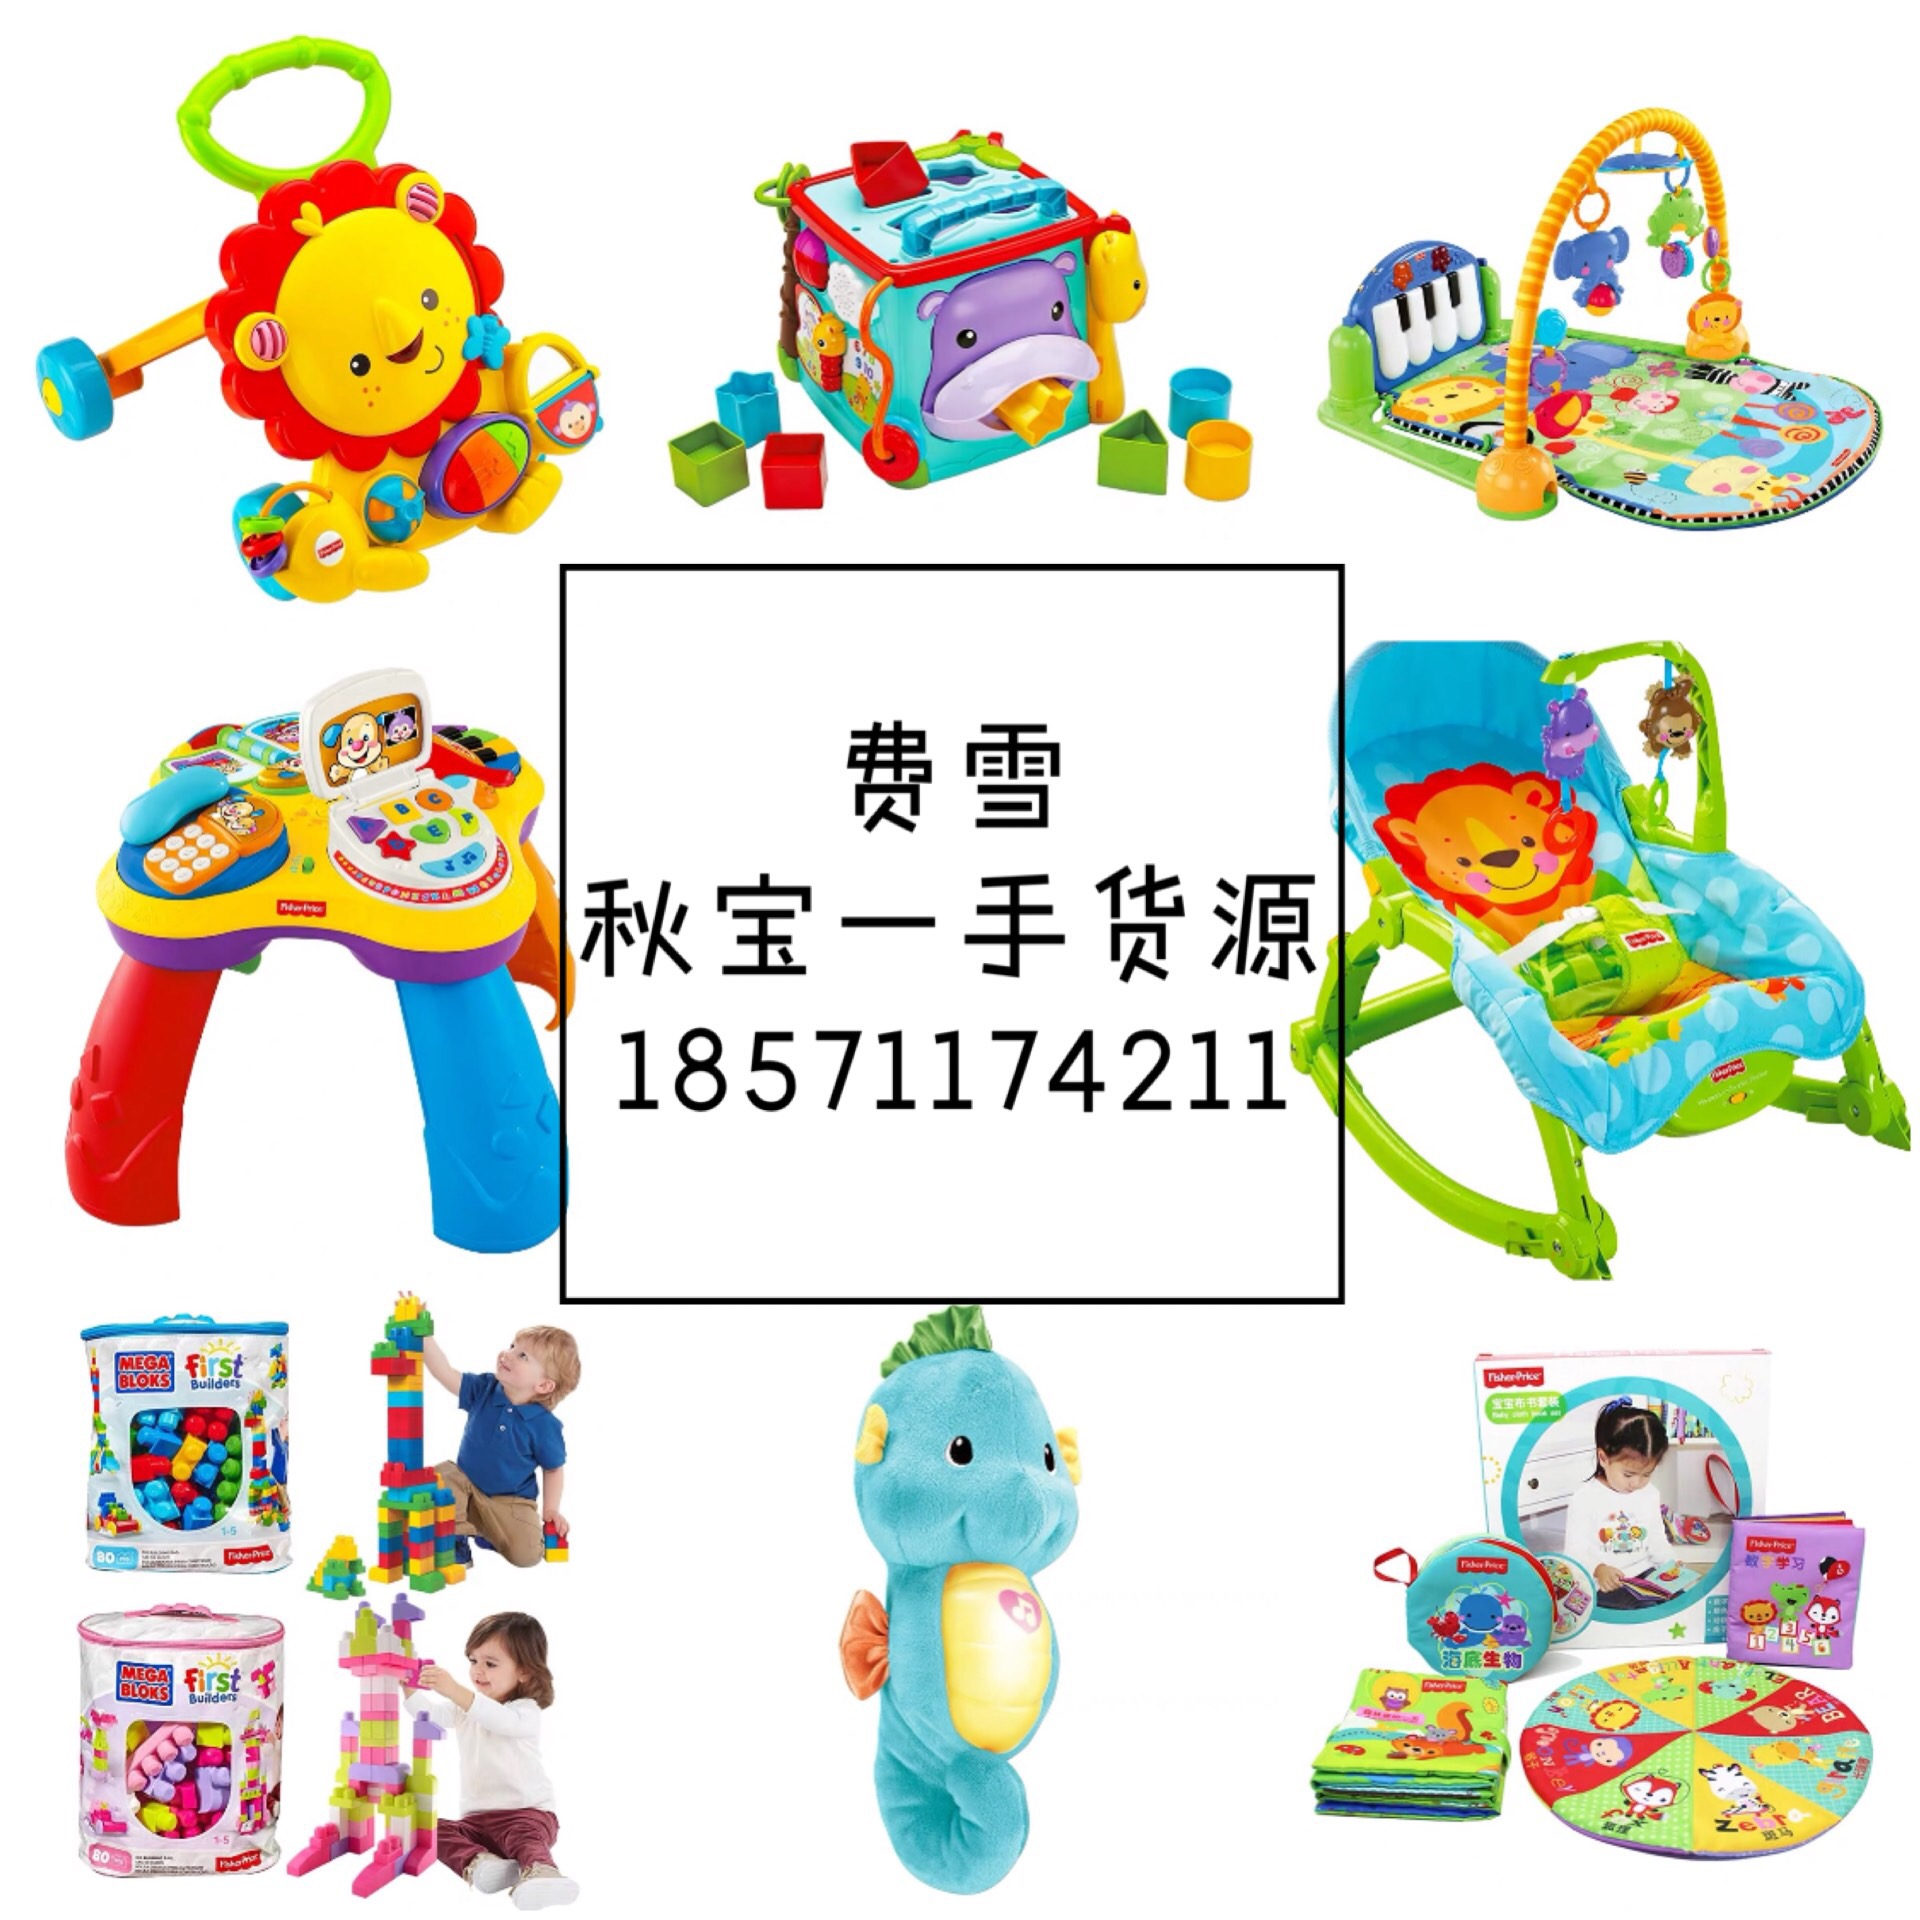 童装母婴玩具微信代理一件代发(www.zzx8.com)